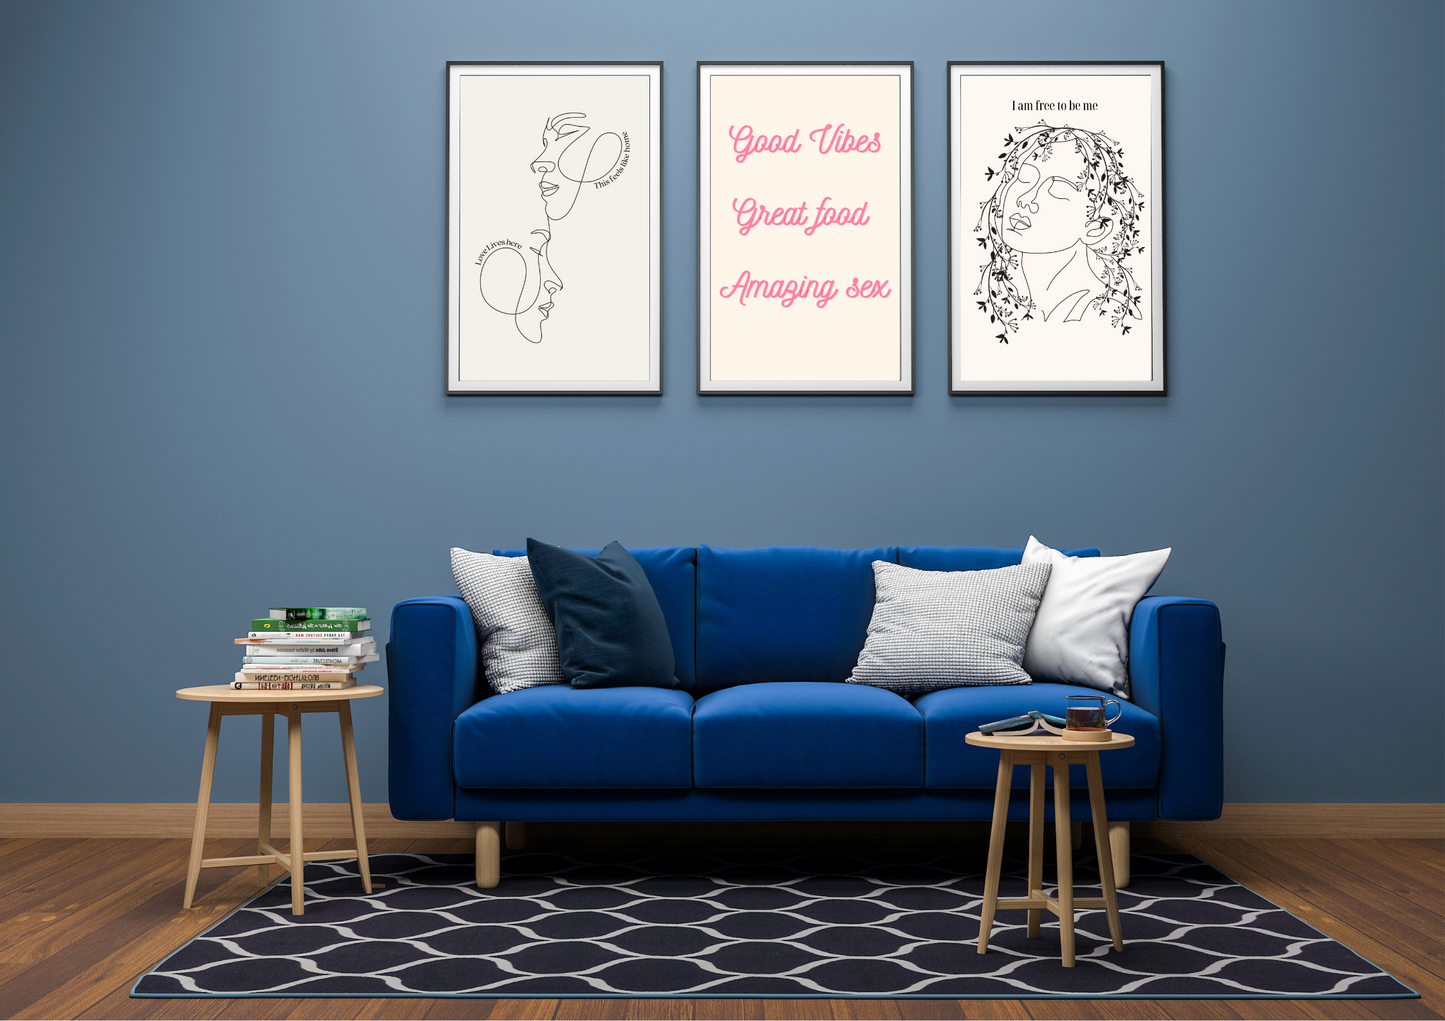 Prints/Wall Art | Home Décor | Affirmation Wall Art